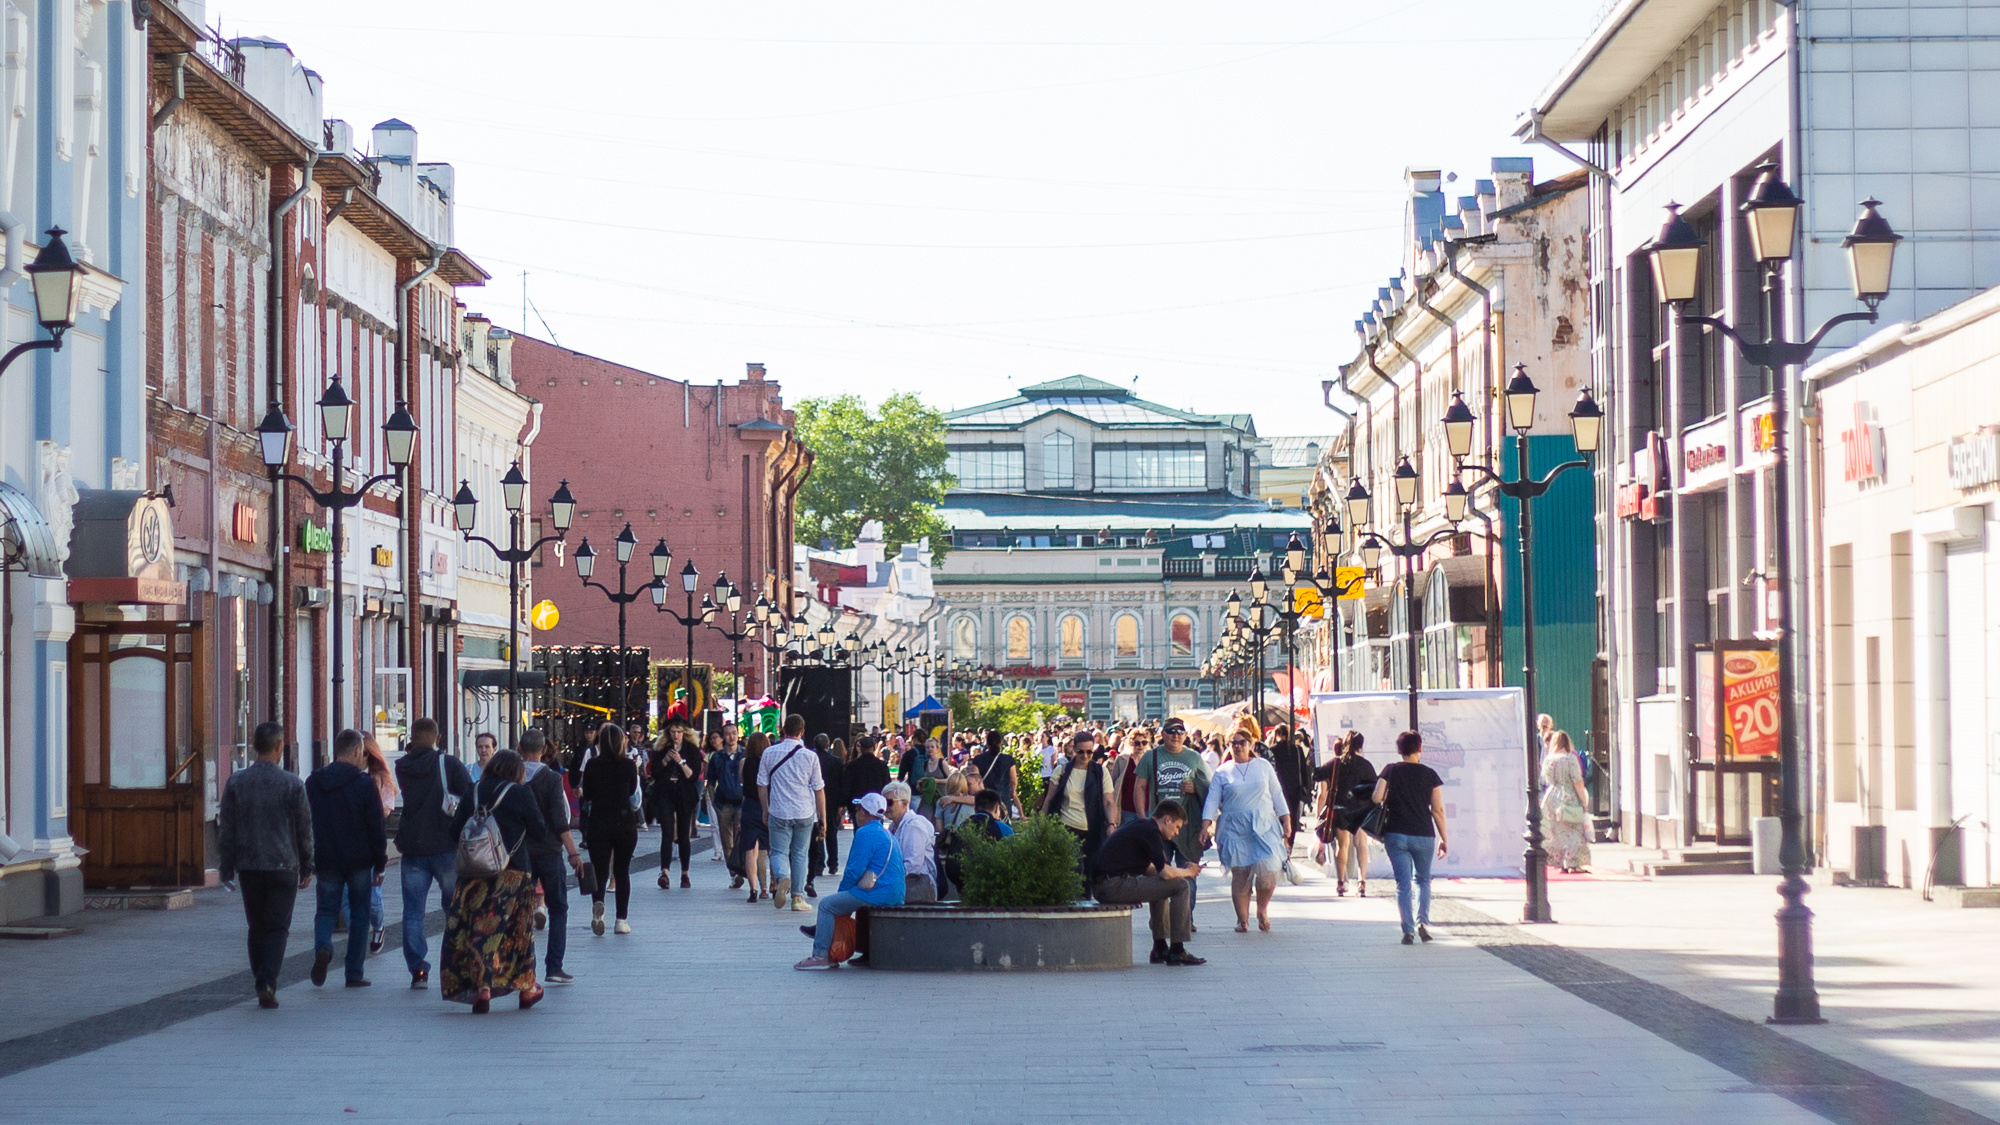 «Иркутск — город на Ангаре, бла-бла-бла». Колонка о том, что не так с новой туристической концепцией Иркутска